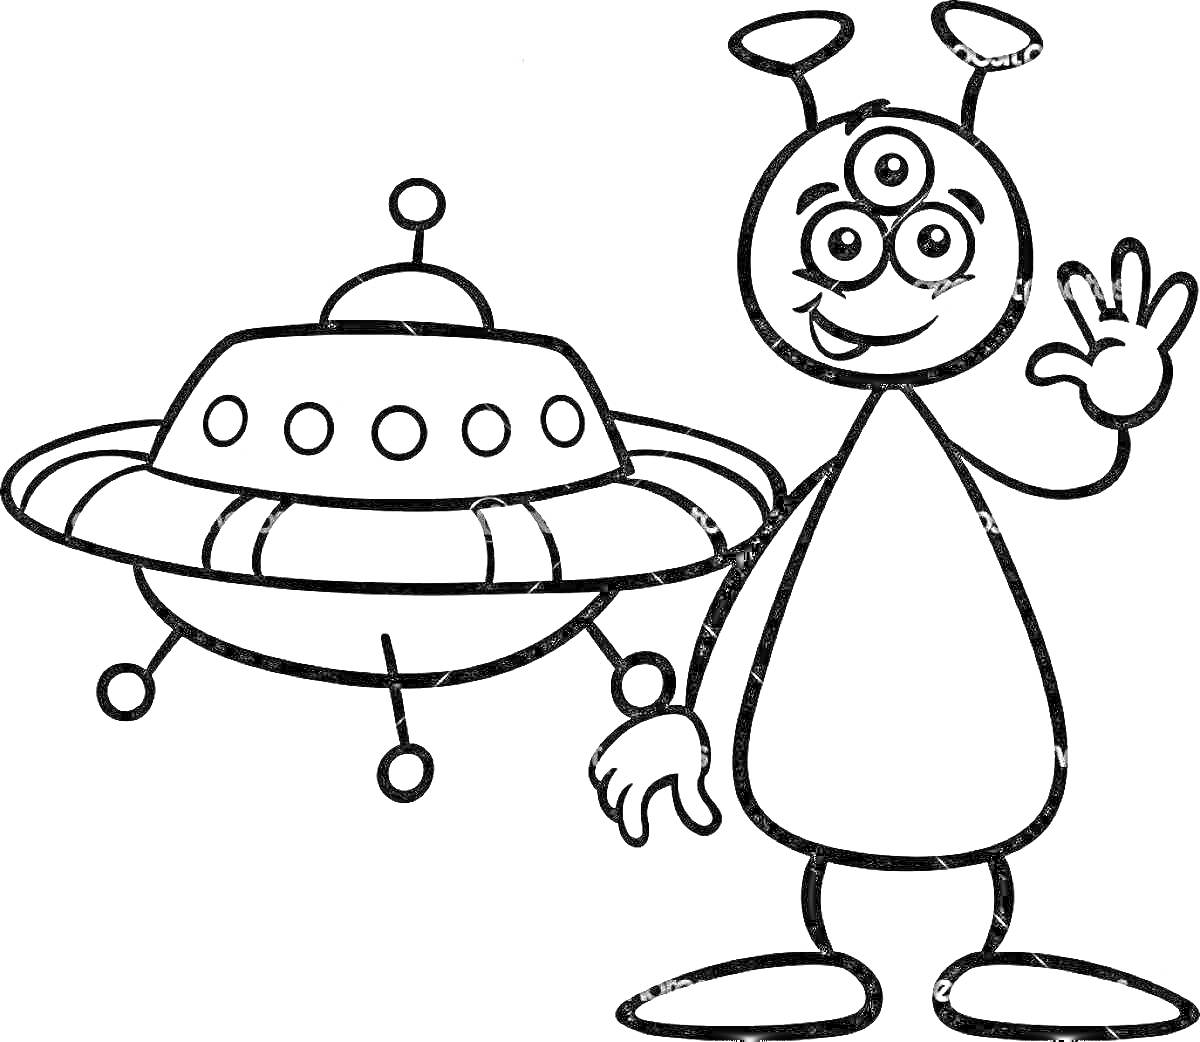 Раскраска Инопланетянин с тремя глазами и антеннами, машущий рукой, рядом с летающей тарелкой